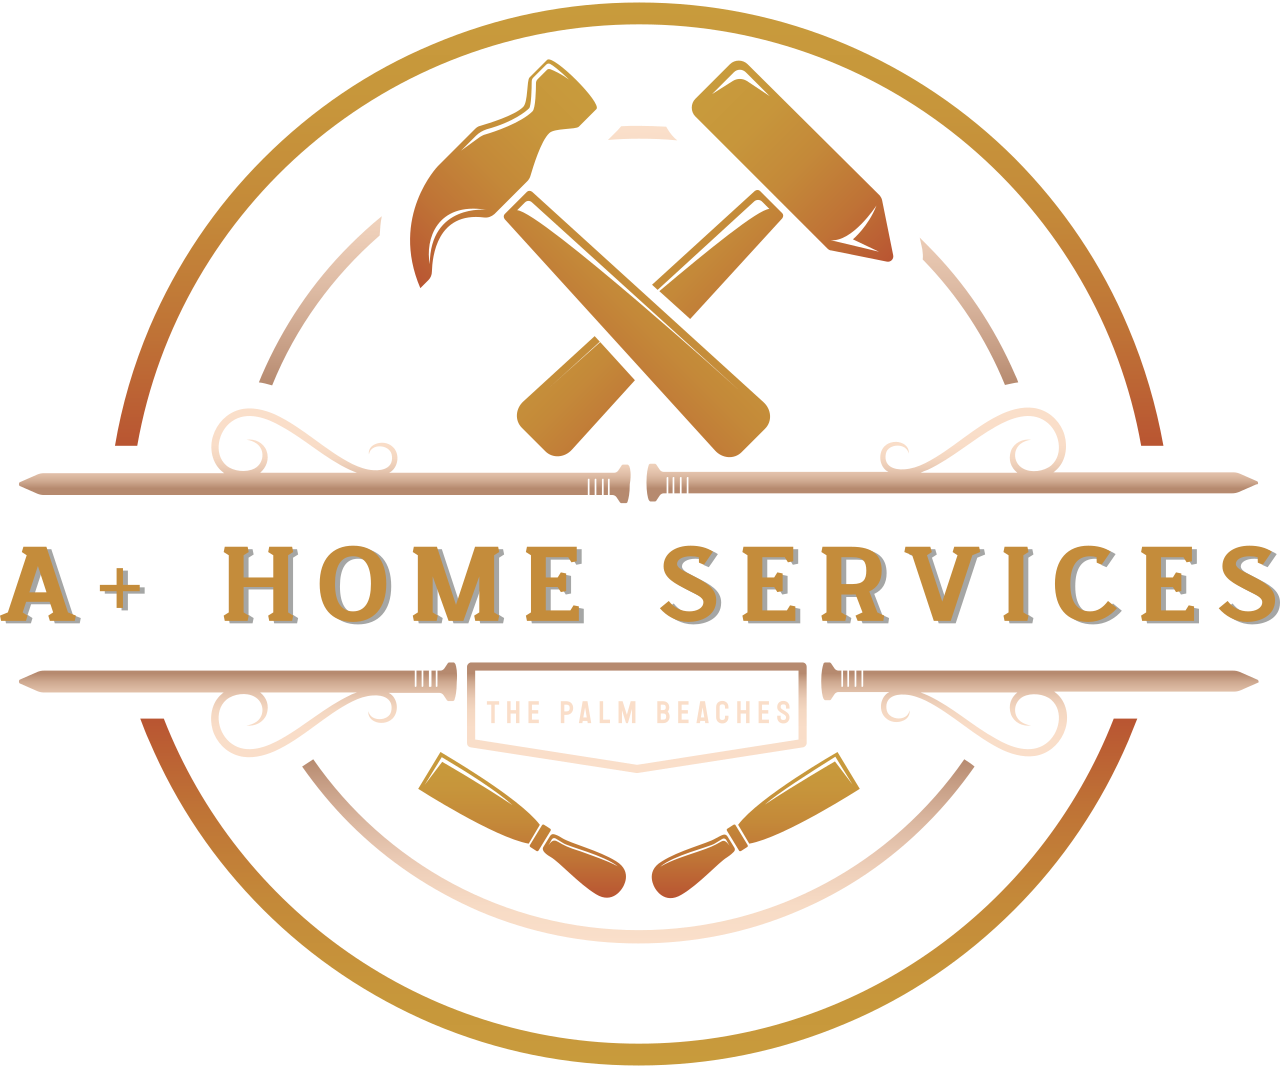 A+ home services's logo